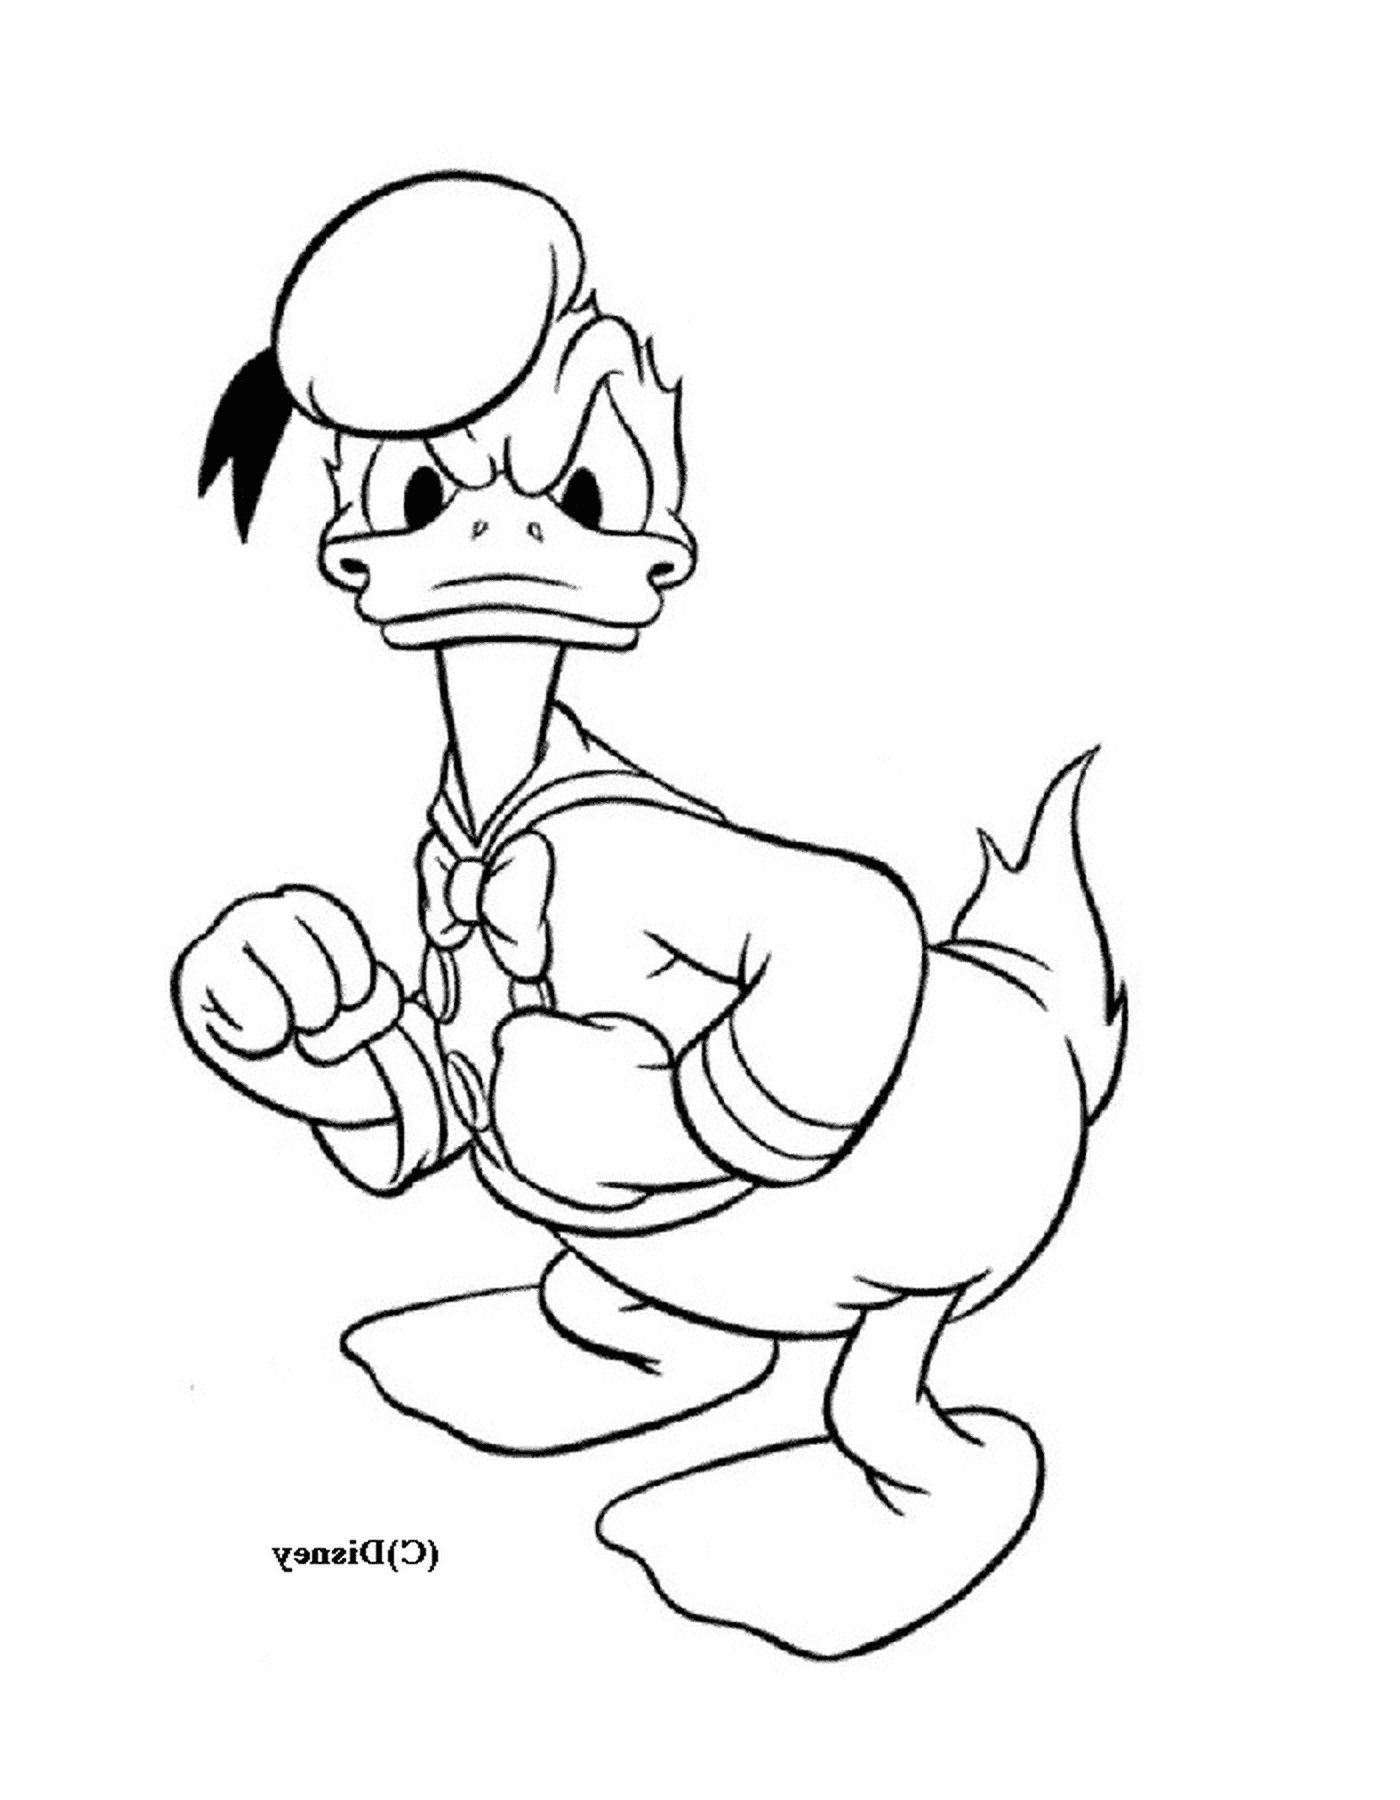  Donald Duck ist nicht glücklich 